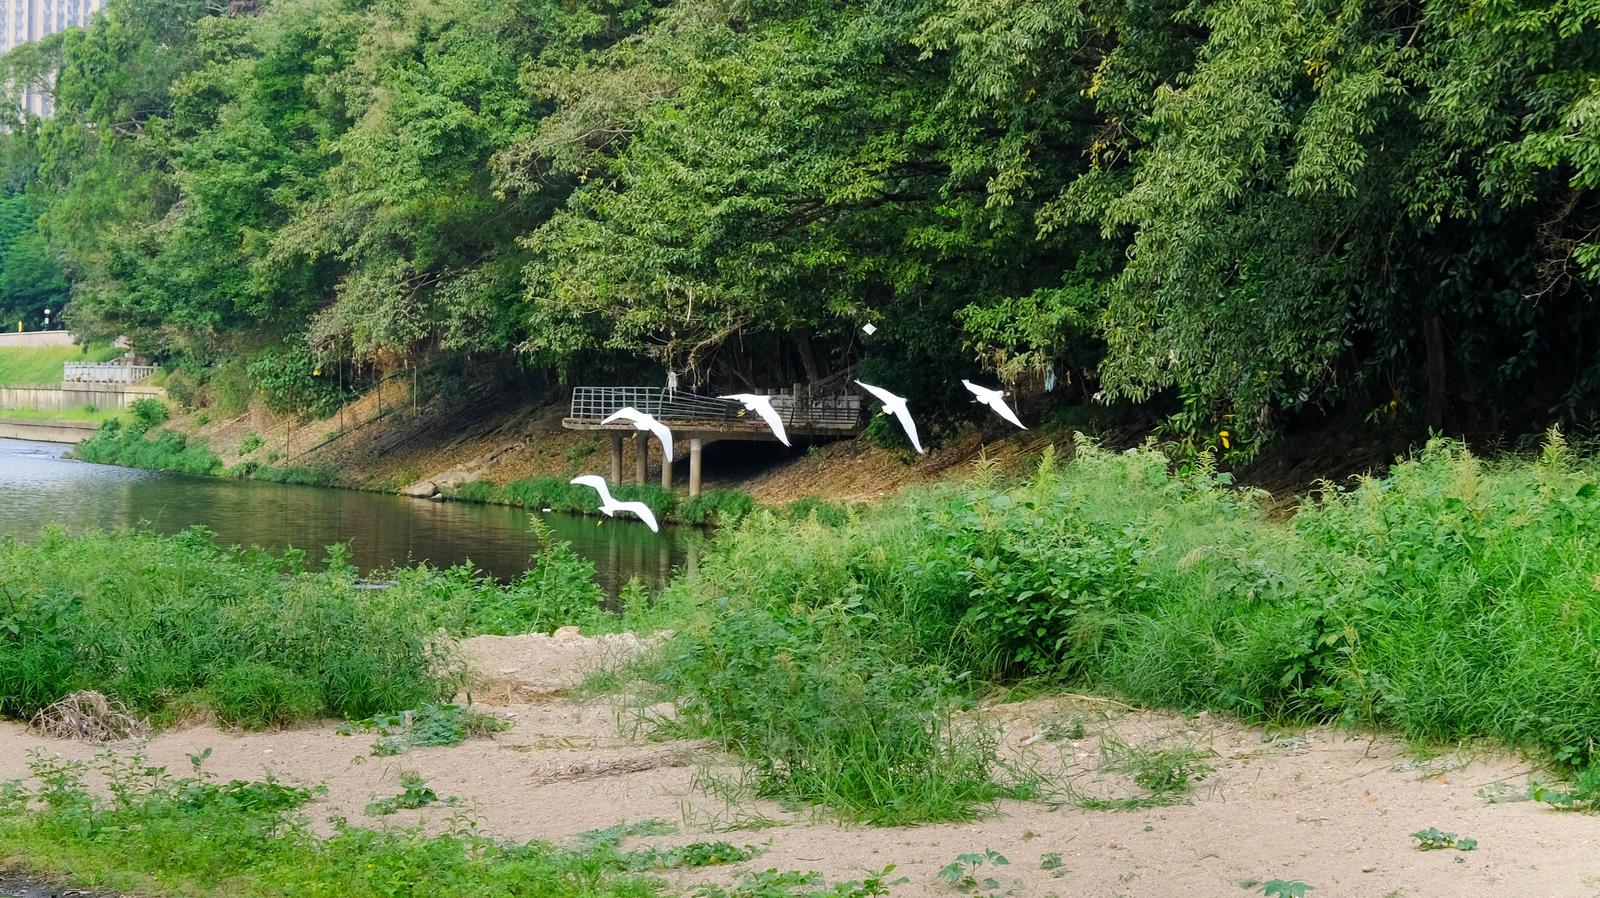 洪湖公园迎来候鸟迁徙季 人与候鸟共绘美丽生态画卷